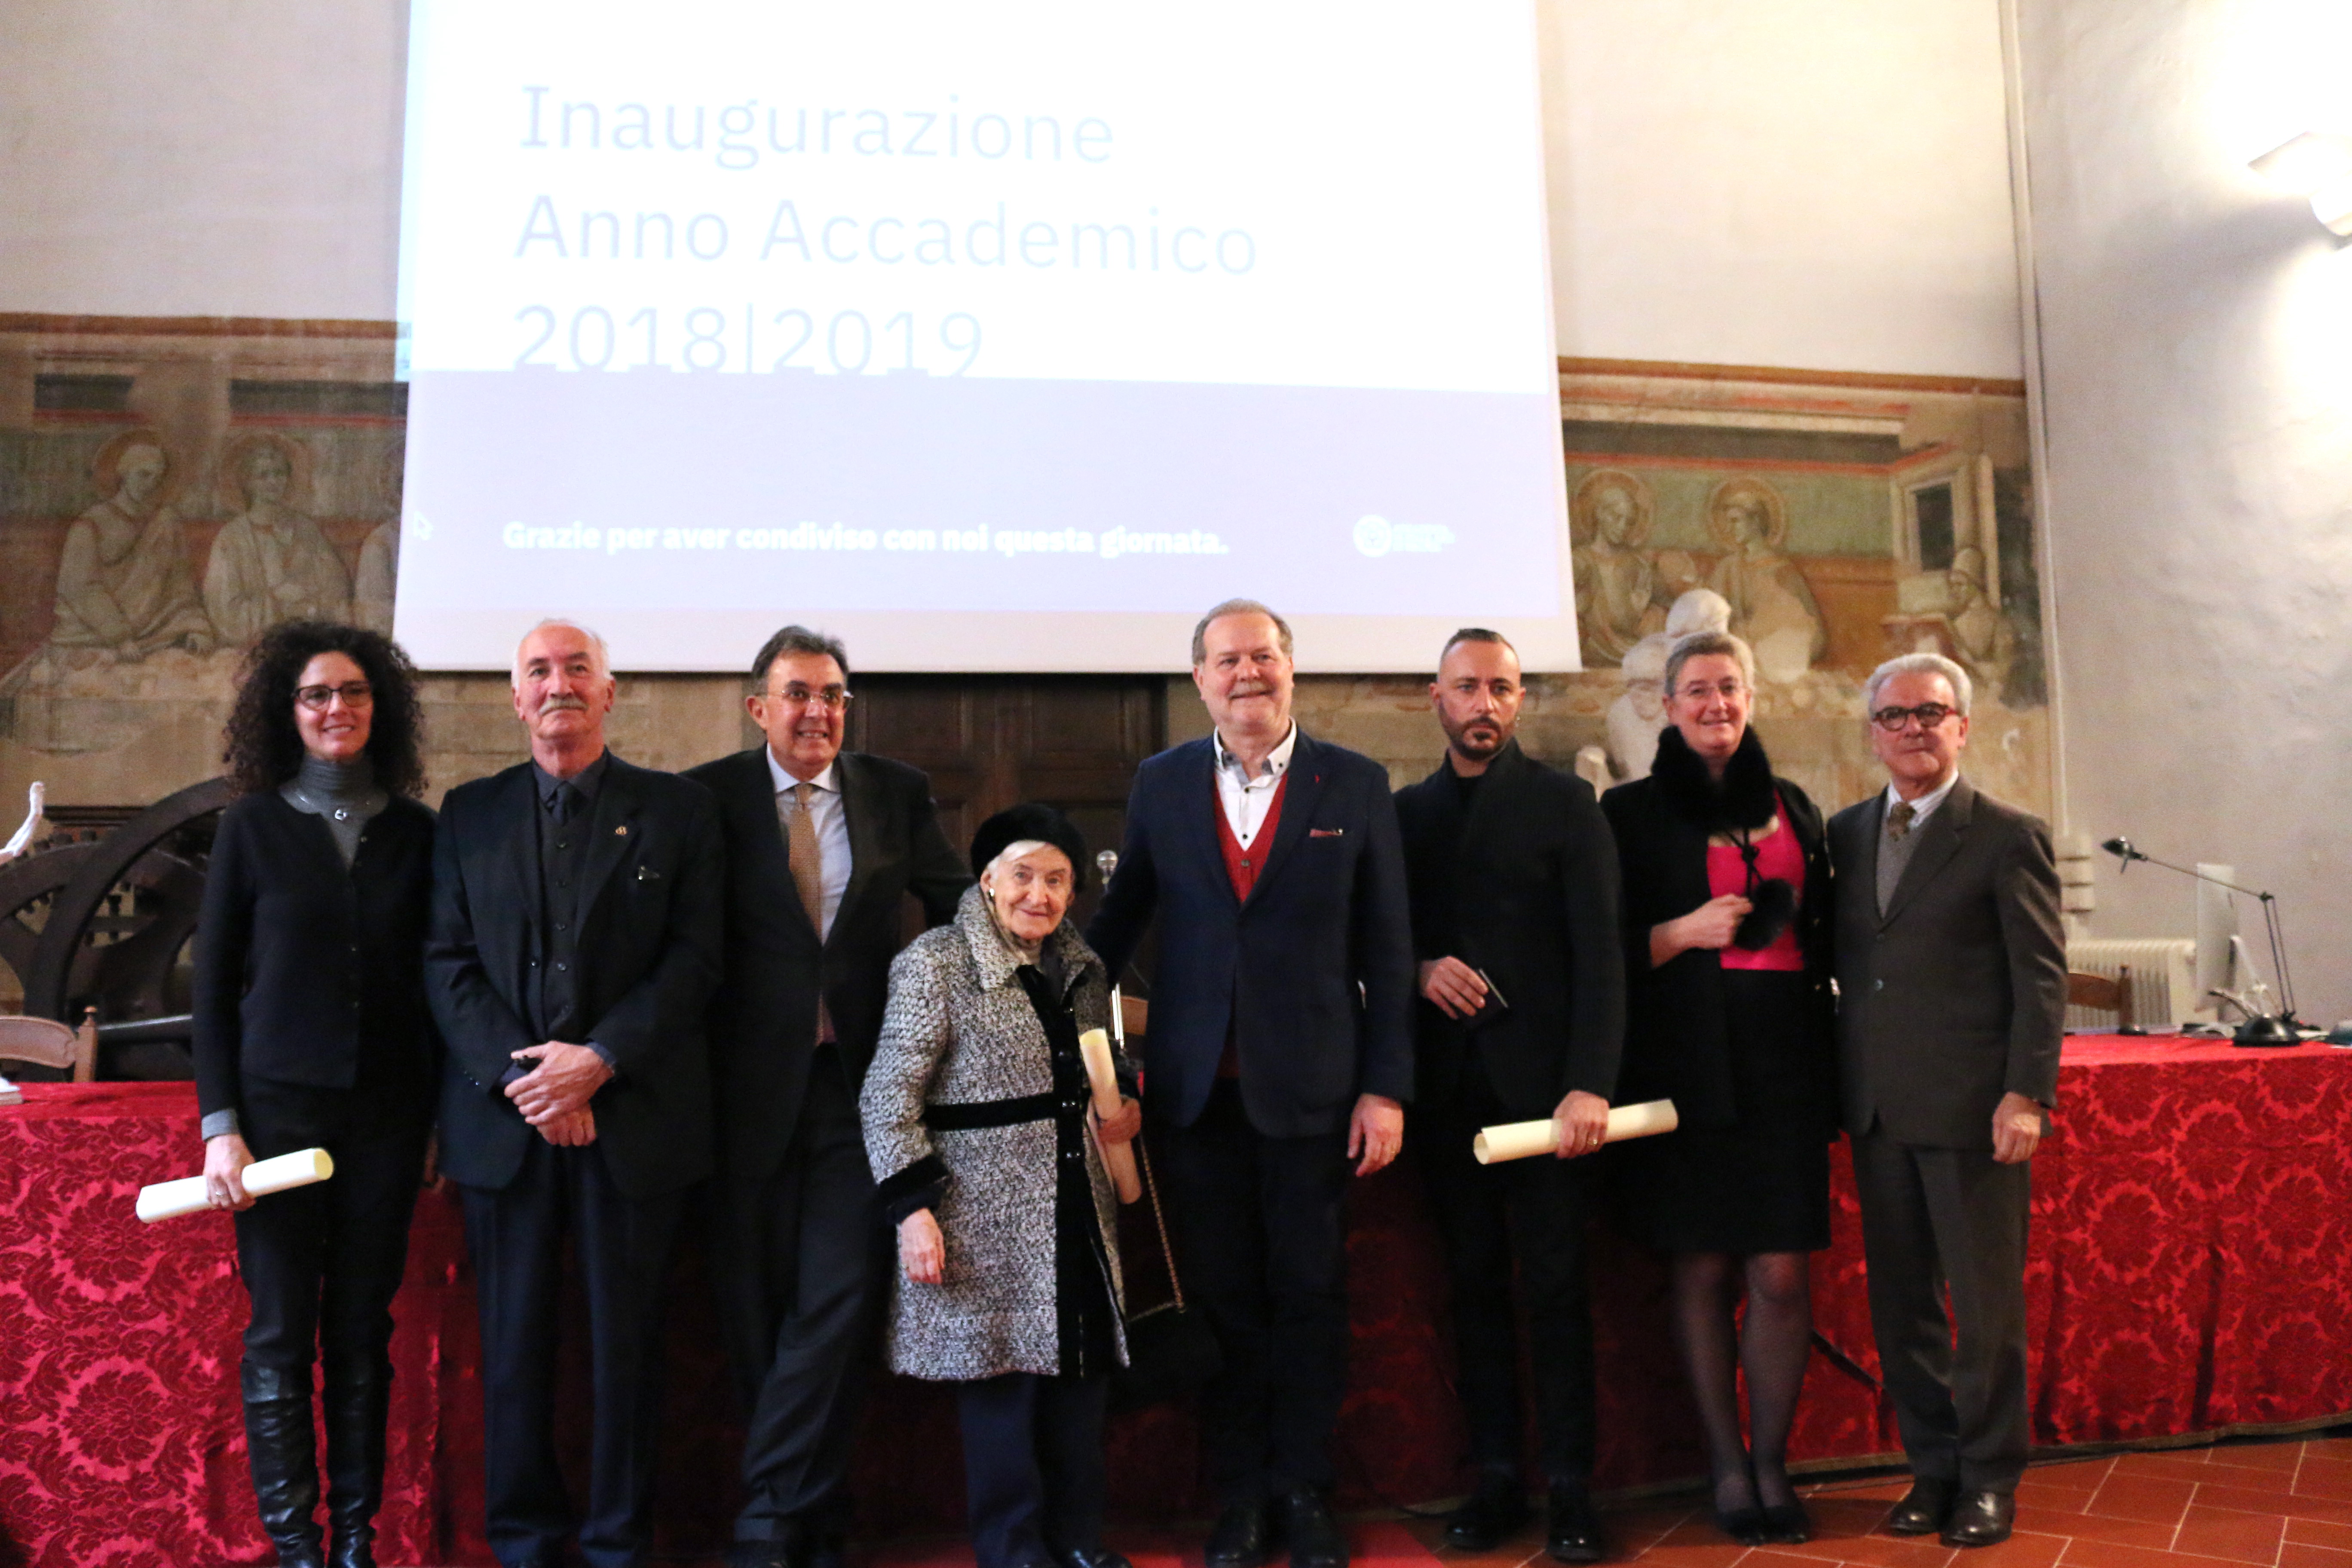 L’Accademia di Belle Arti di Firenze inaugura l’anno accademico 